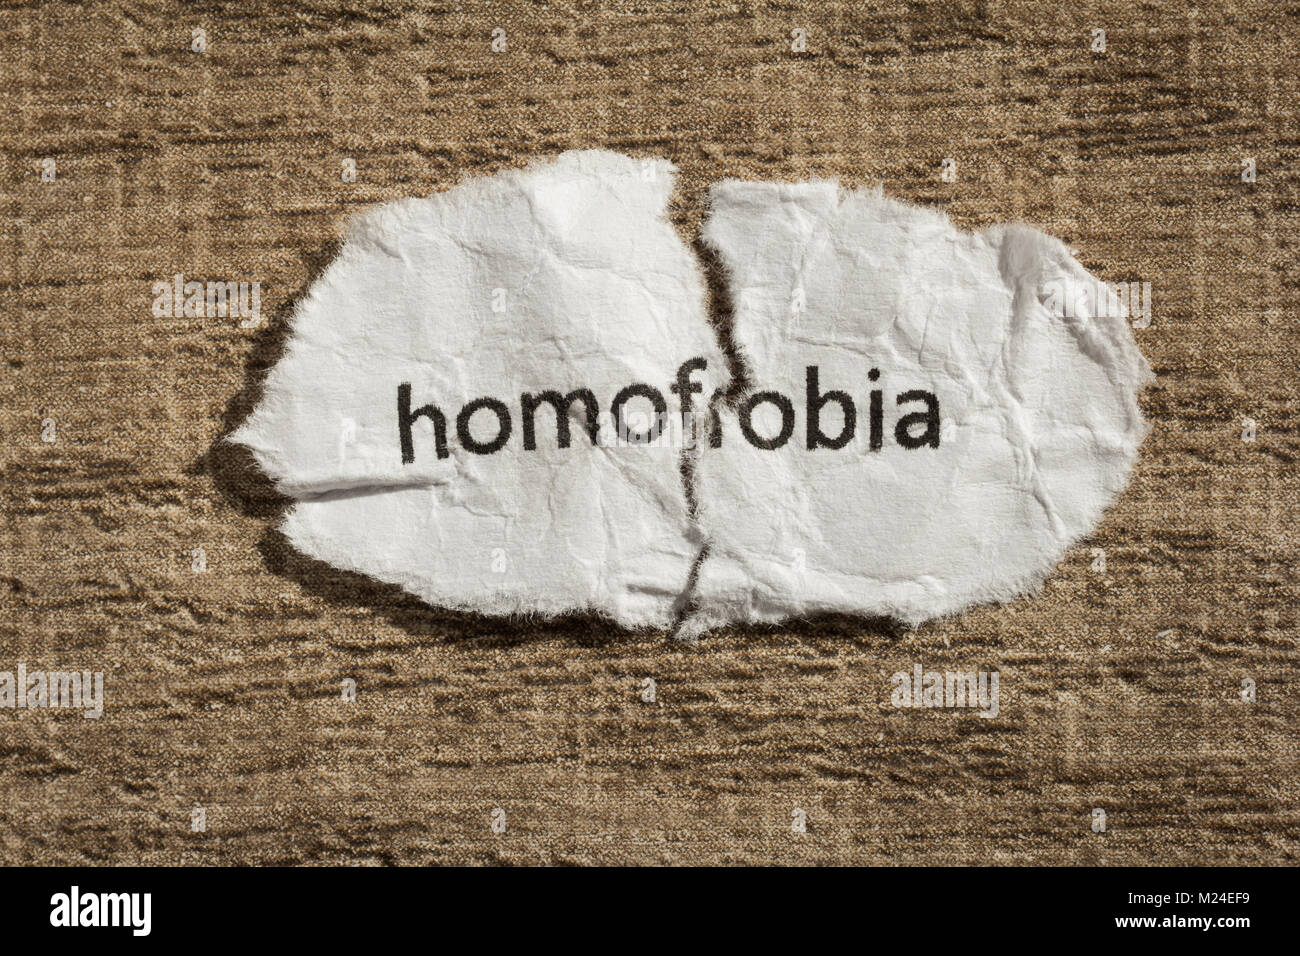 Zerrissenes Papier geschrieben homofobia, Portugiesisch und Spanisch Wort für Homophobie, über Holz- Hintergrund. Alte und verlassene Idee oder Praxis. Makro Foto Stockfoto